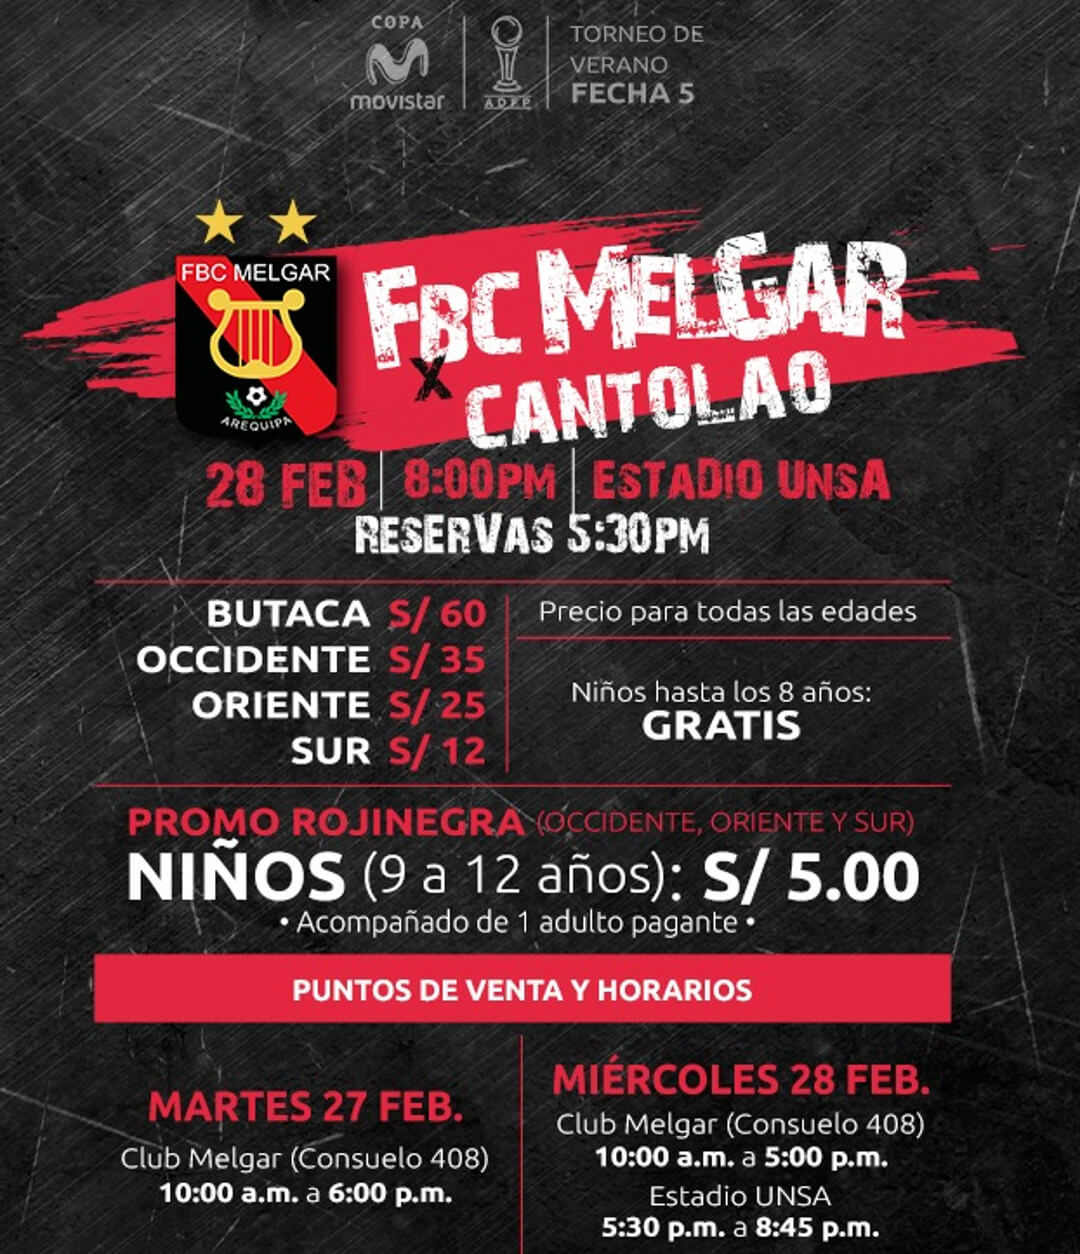 peru futbol arequipa fbc melgar 2018 - Foto Prensa Melgar - 2018-02-27